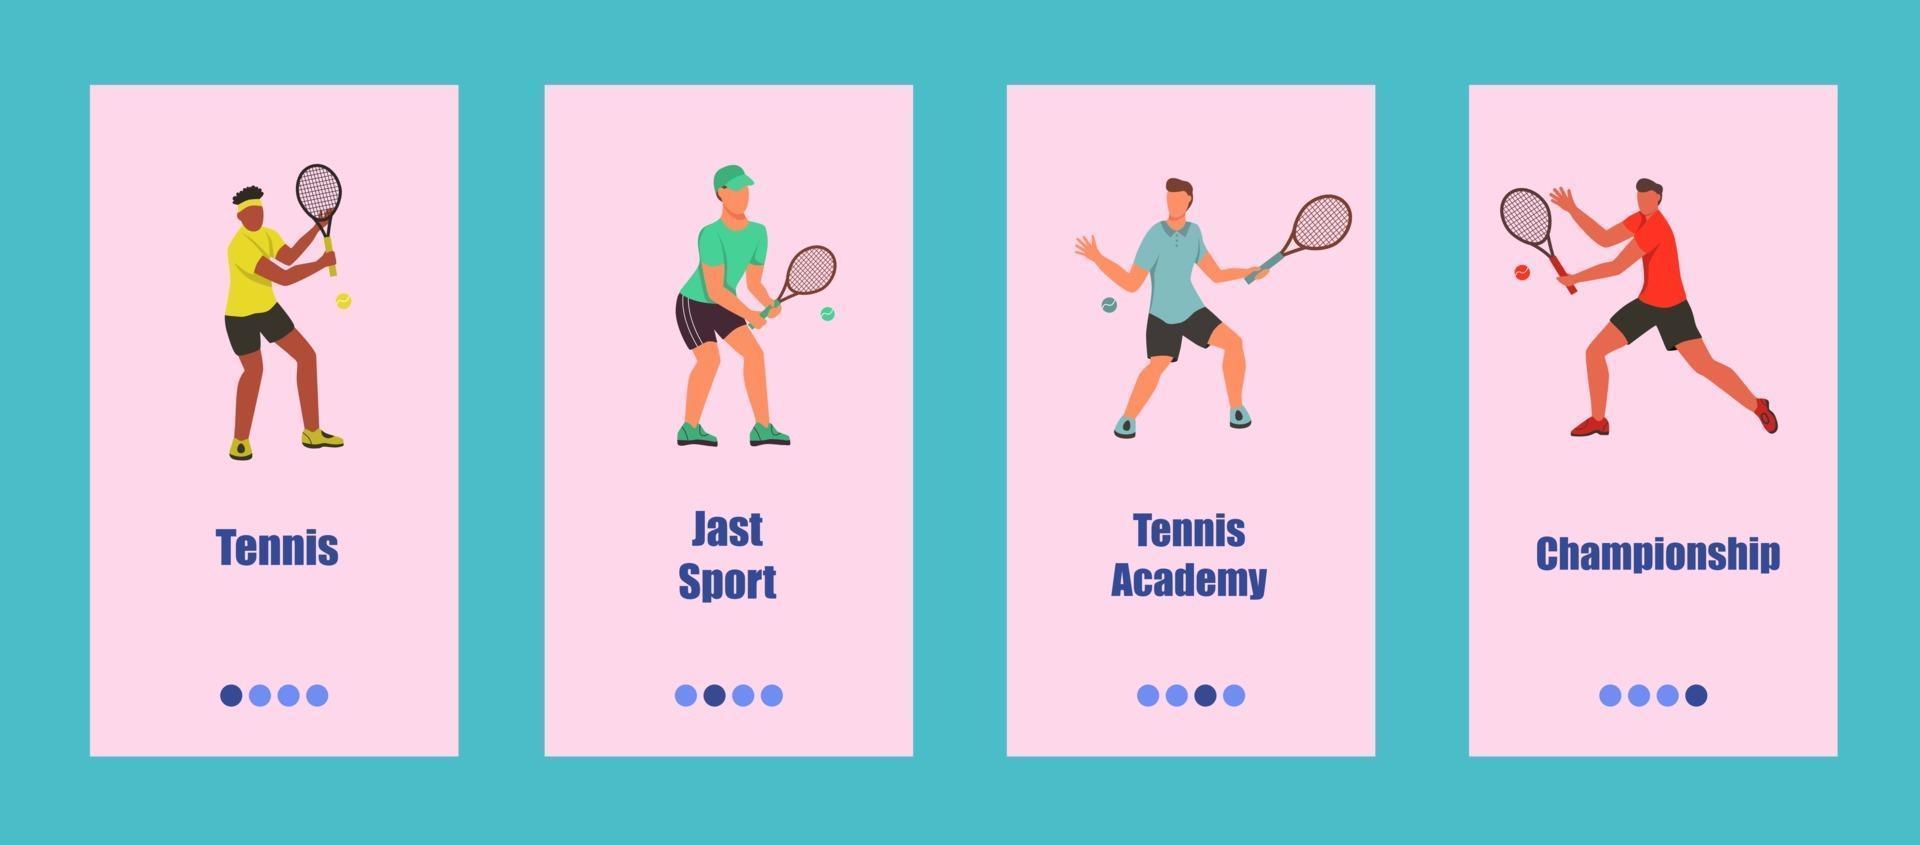 modèle d'application mobile de tennis. les jeunes jouent au tennis. concept d'école de tennis, de compétition ou de championnat. illustration vectorielle plane. vecteur